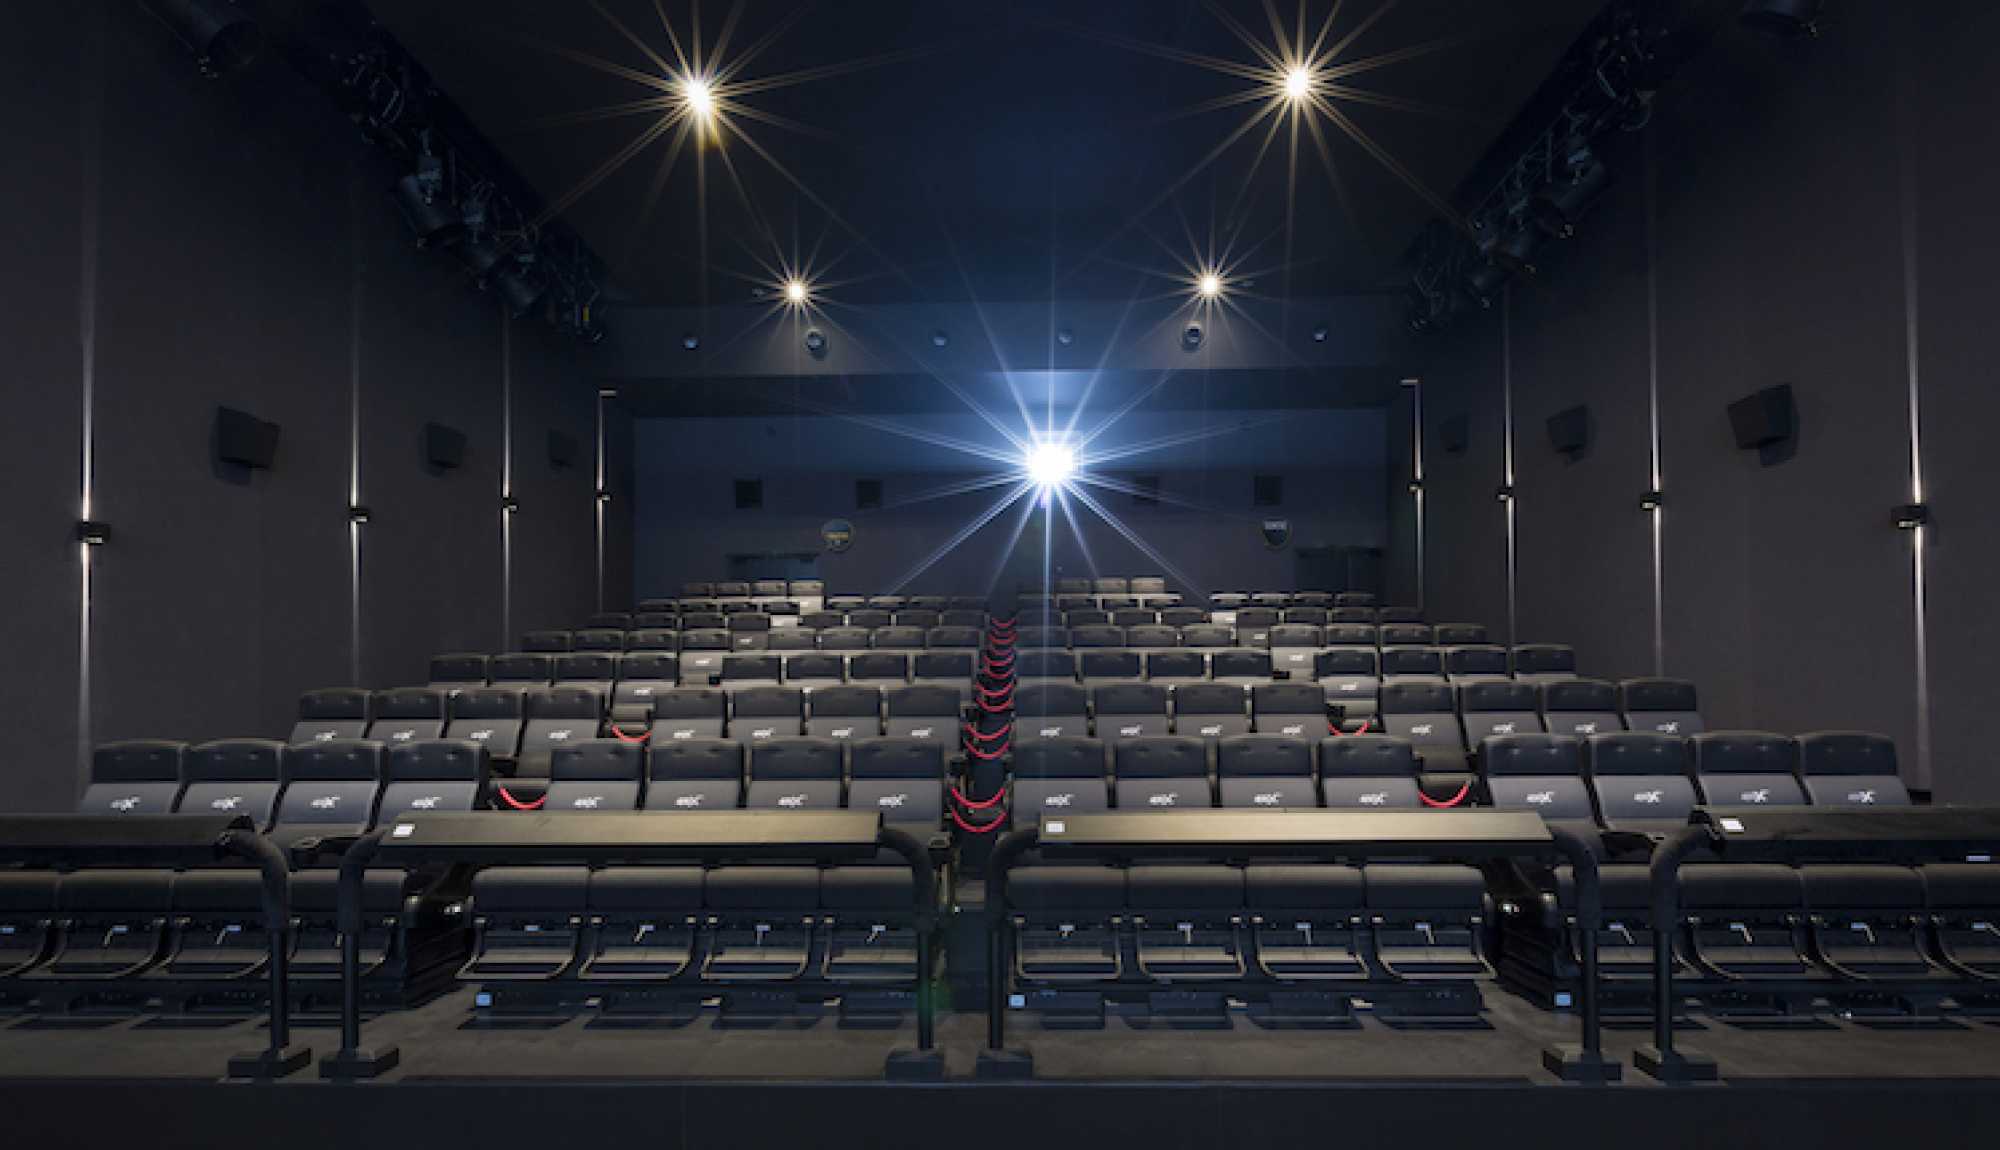 FAY ARCHITECTES - Les Cinémas Pathé - Gaumont - Cinéma 4DX - screenX - Interior design